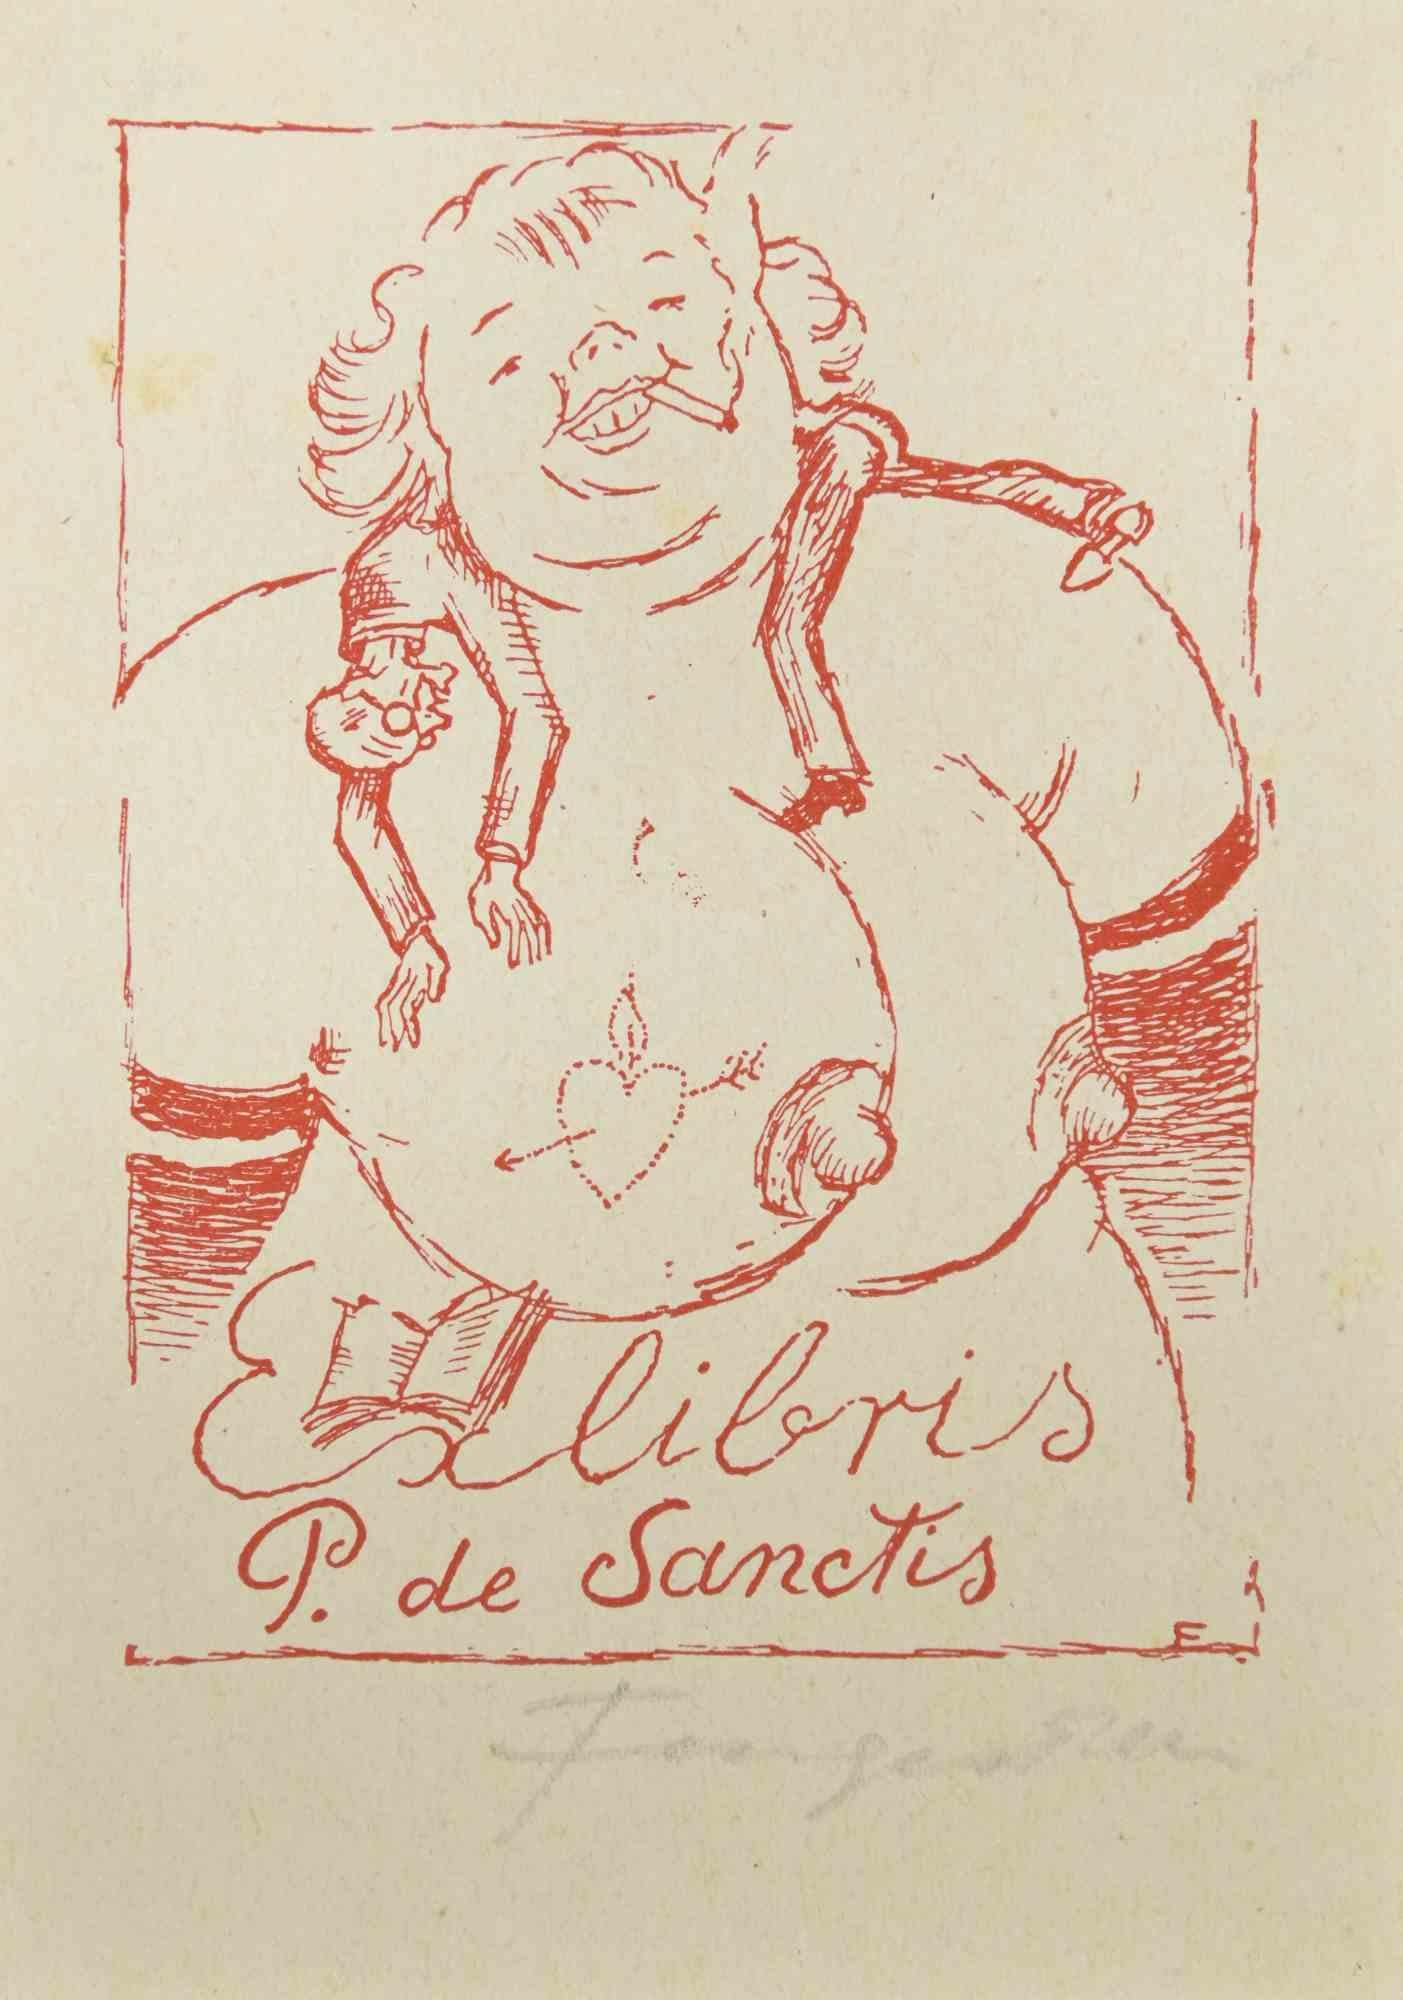 Ex Libris P. de Sanctis  ist ein farbiger Holzschnitt, der von  Michel Fingesten.

Handsigniert am unteren rechten Rand.

Gute Bedingungen.

Michel Fingesten (1884 - 1943) war ein tschechischer Maler und Graveur jüdischer Herkunft. Er gilt als einer